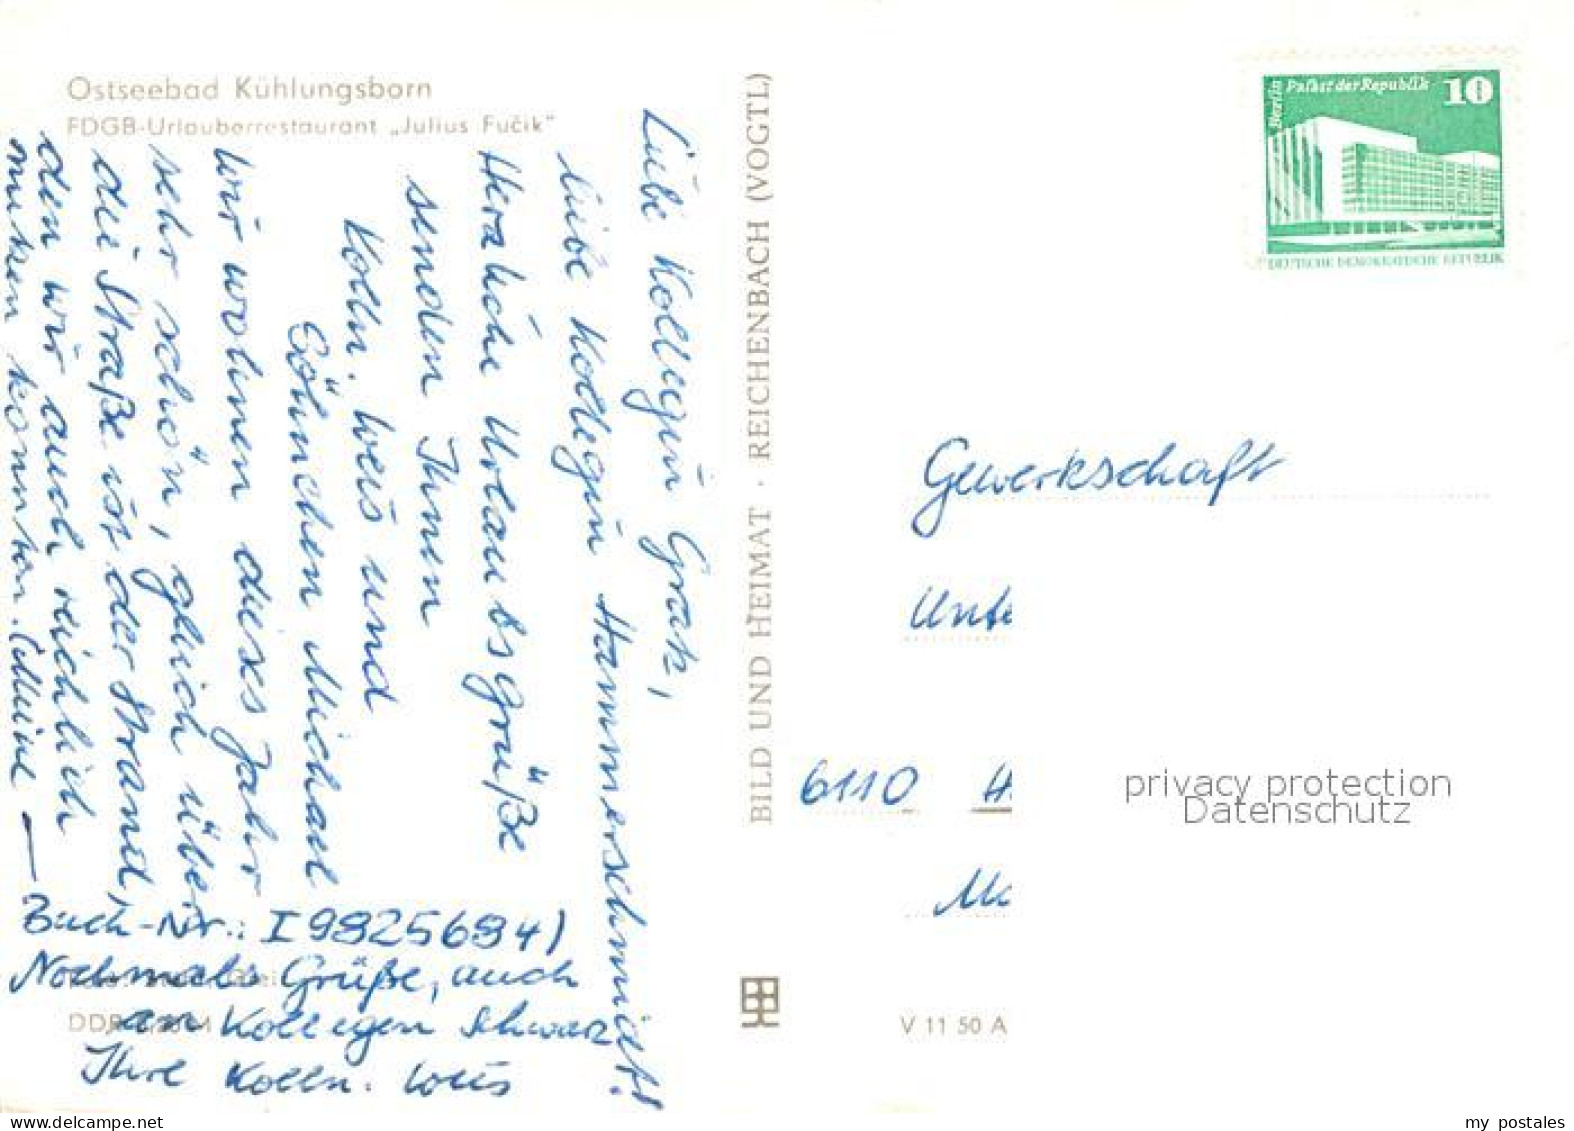 73105722 Kuehlungsborn Ostseebad FDGB Urlauberrestaurant Julius Fucik Kuehlungsb - Kühlungsborn